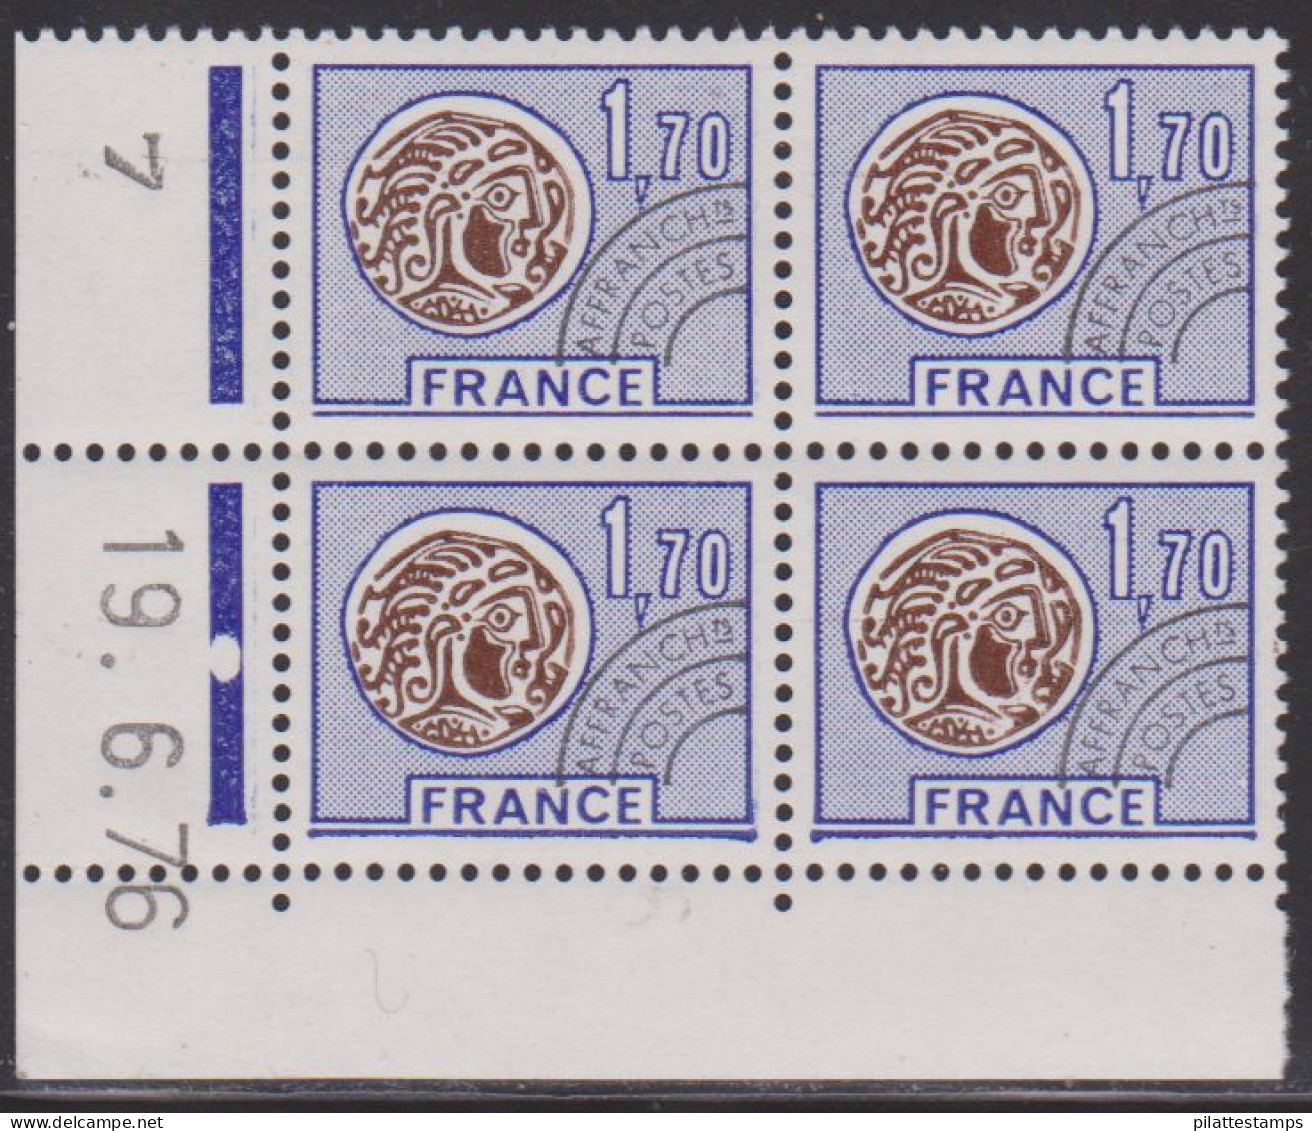 FRANCE PREOBLITERE N° 145** MONNAIE GAULOISE COIN DATE DU 19/6/76 - Préoblitérés